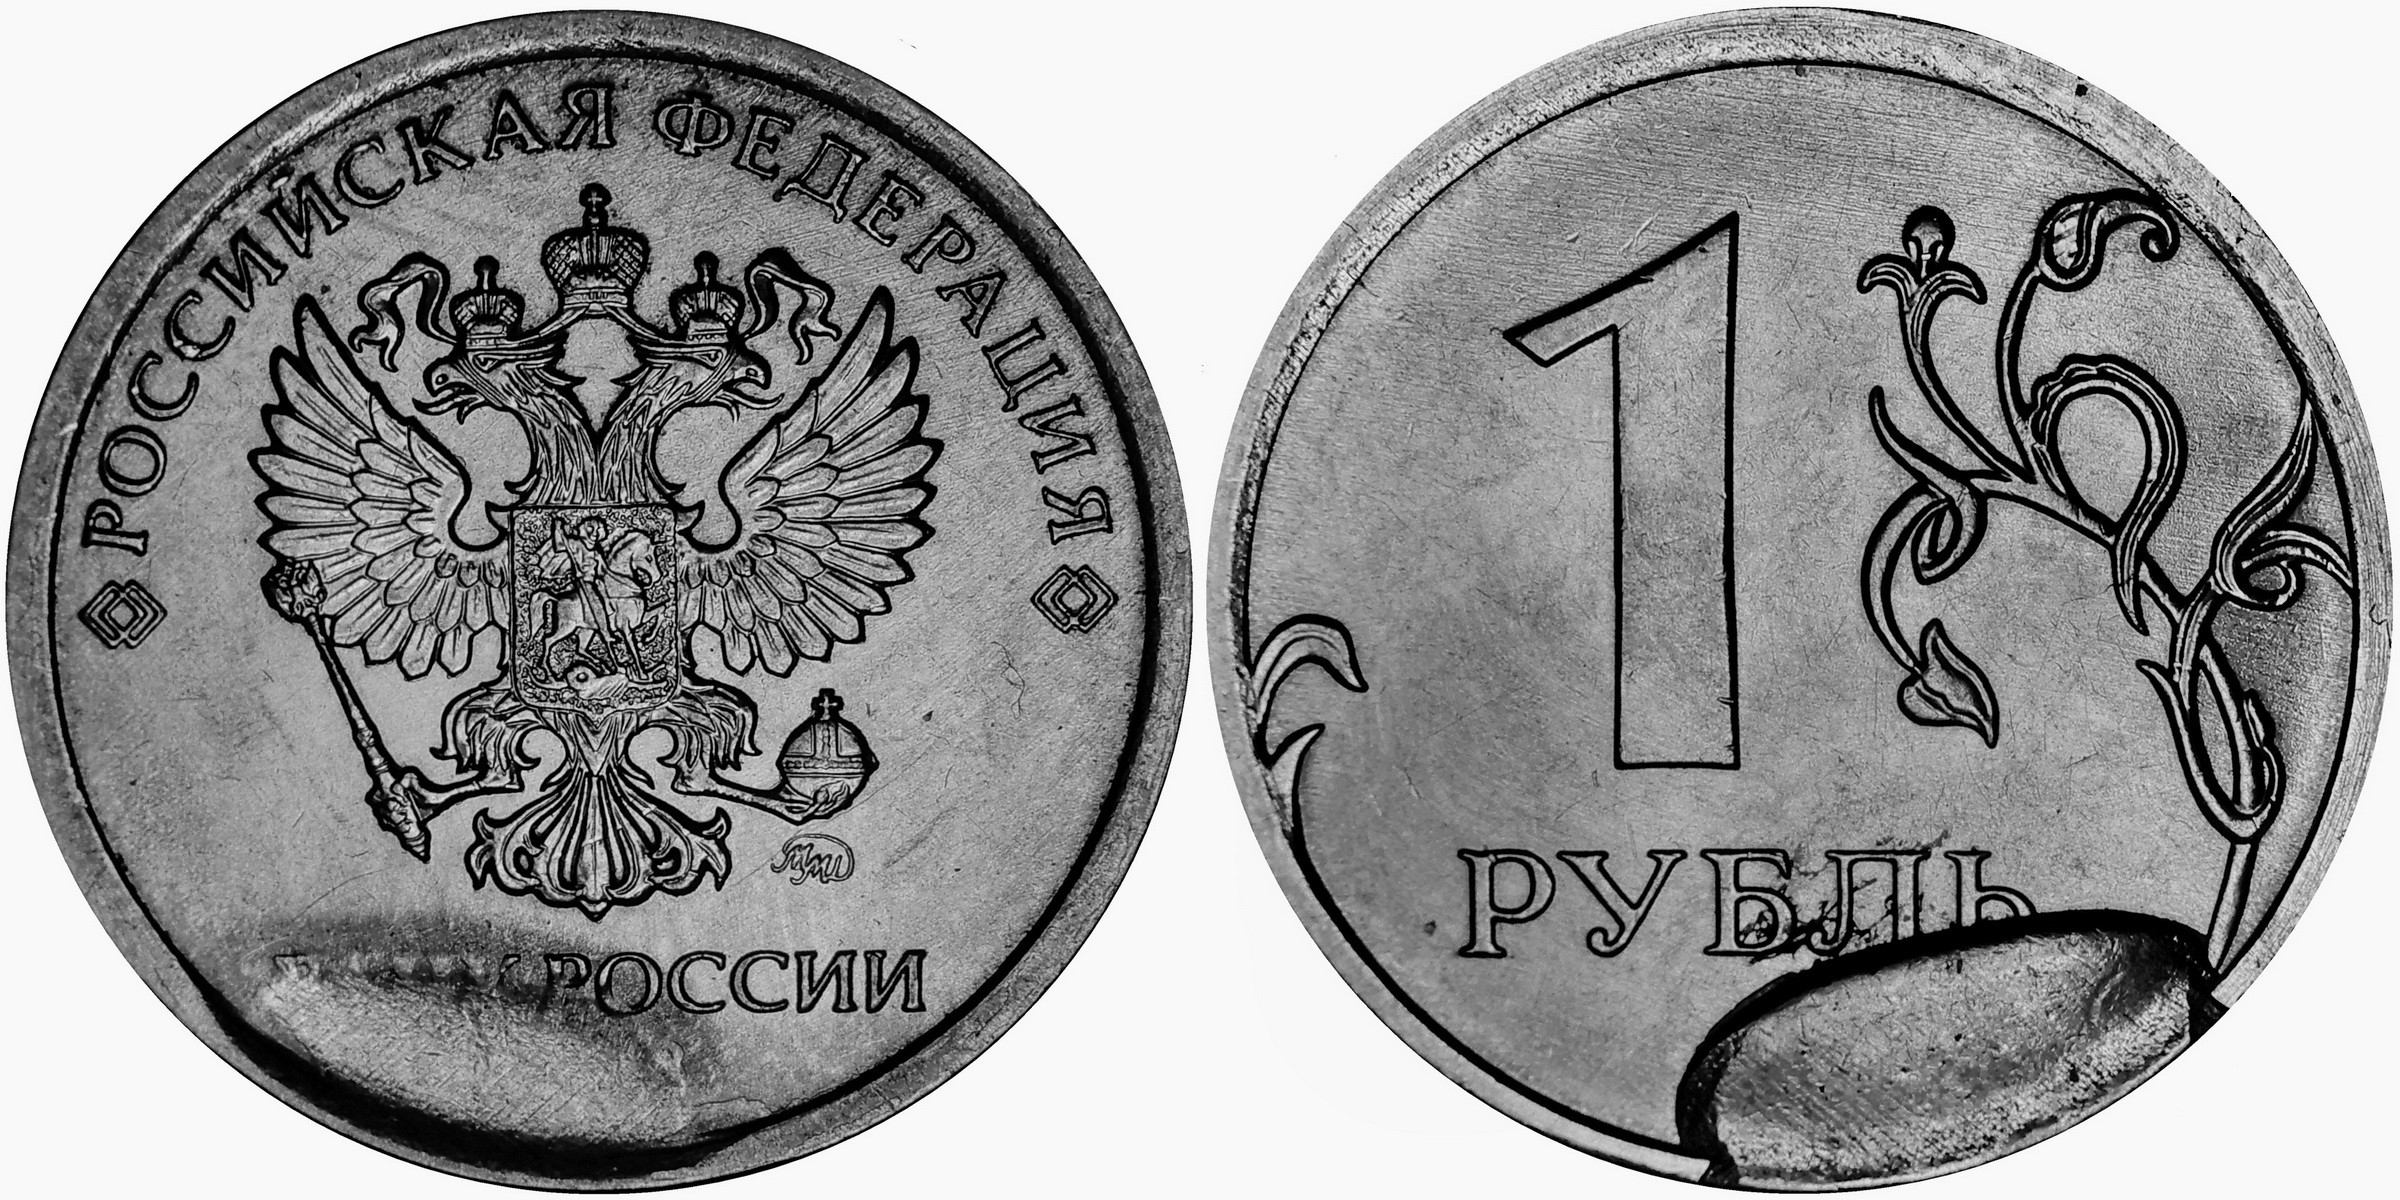 1 рубль мм. Монета 1 рубль реверс и Аверс. 1 Рубль 2020 брак раскол штемпеля. 1 Рубль 2020 года брак раскол. Монета брак 1 рубль 2020 раскол штемпеля.